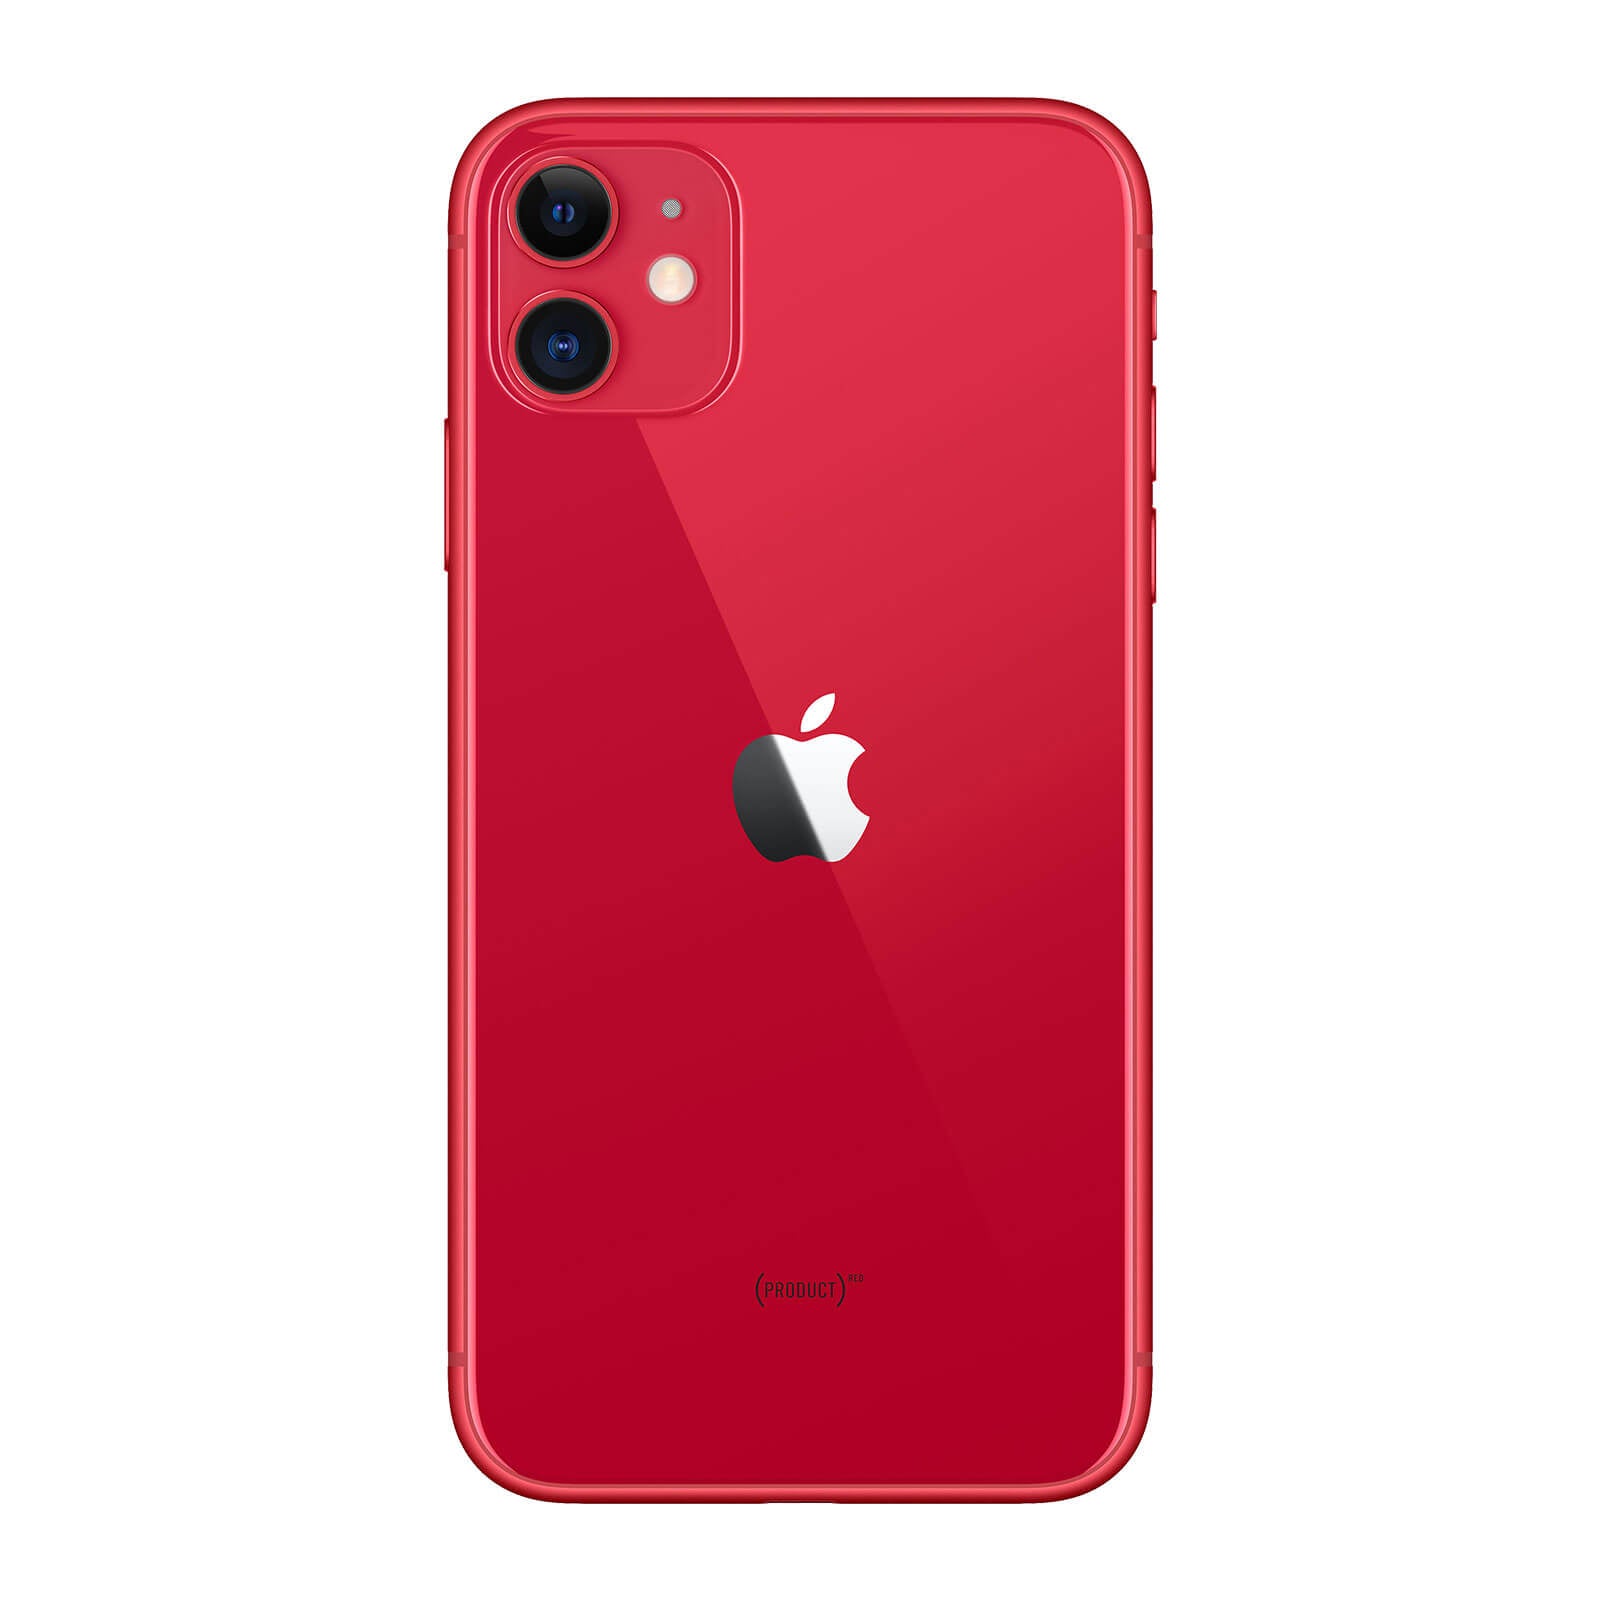 iPhone 11 128 Go - Product Red - Débloqué - Très Bon État